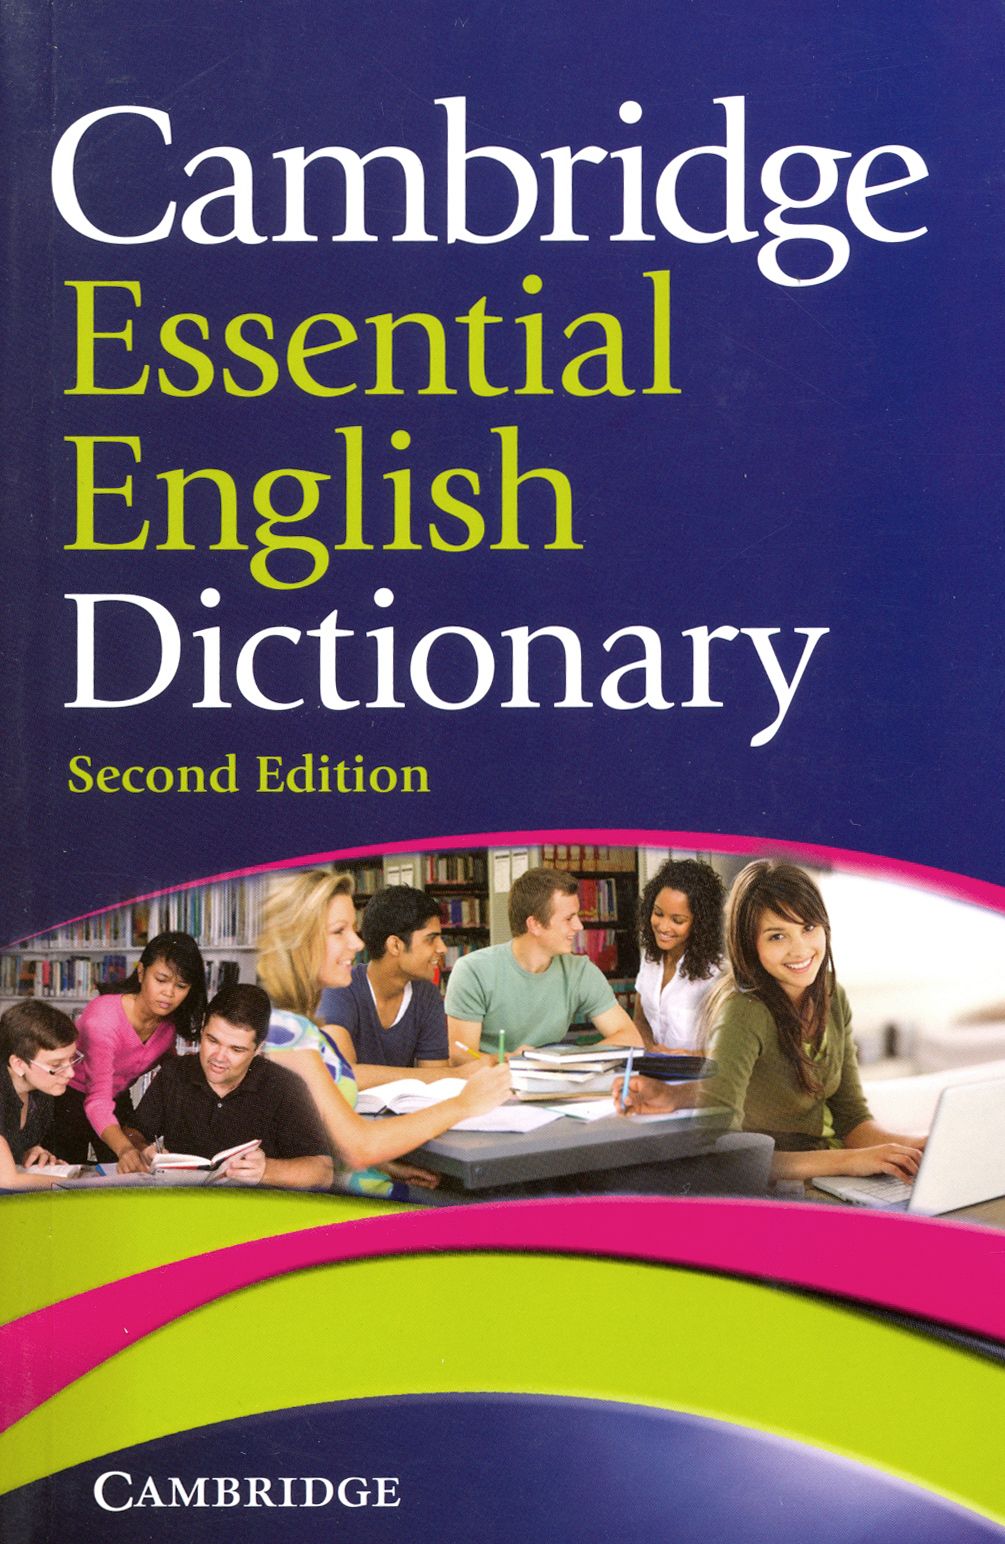 Cambridge Dictionary. Словарь Cambridge. Cambridge Essential English Dictionary. Английский Cambridge. Two dictionary